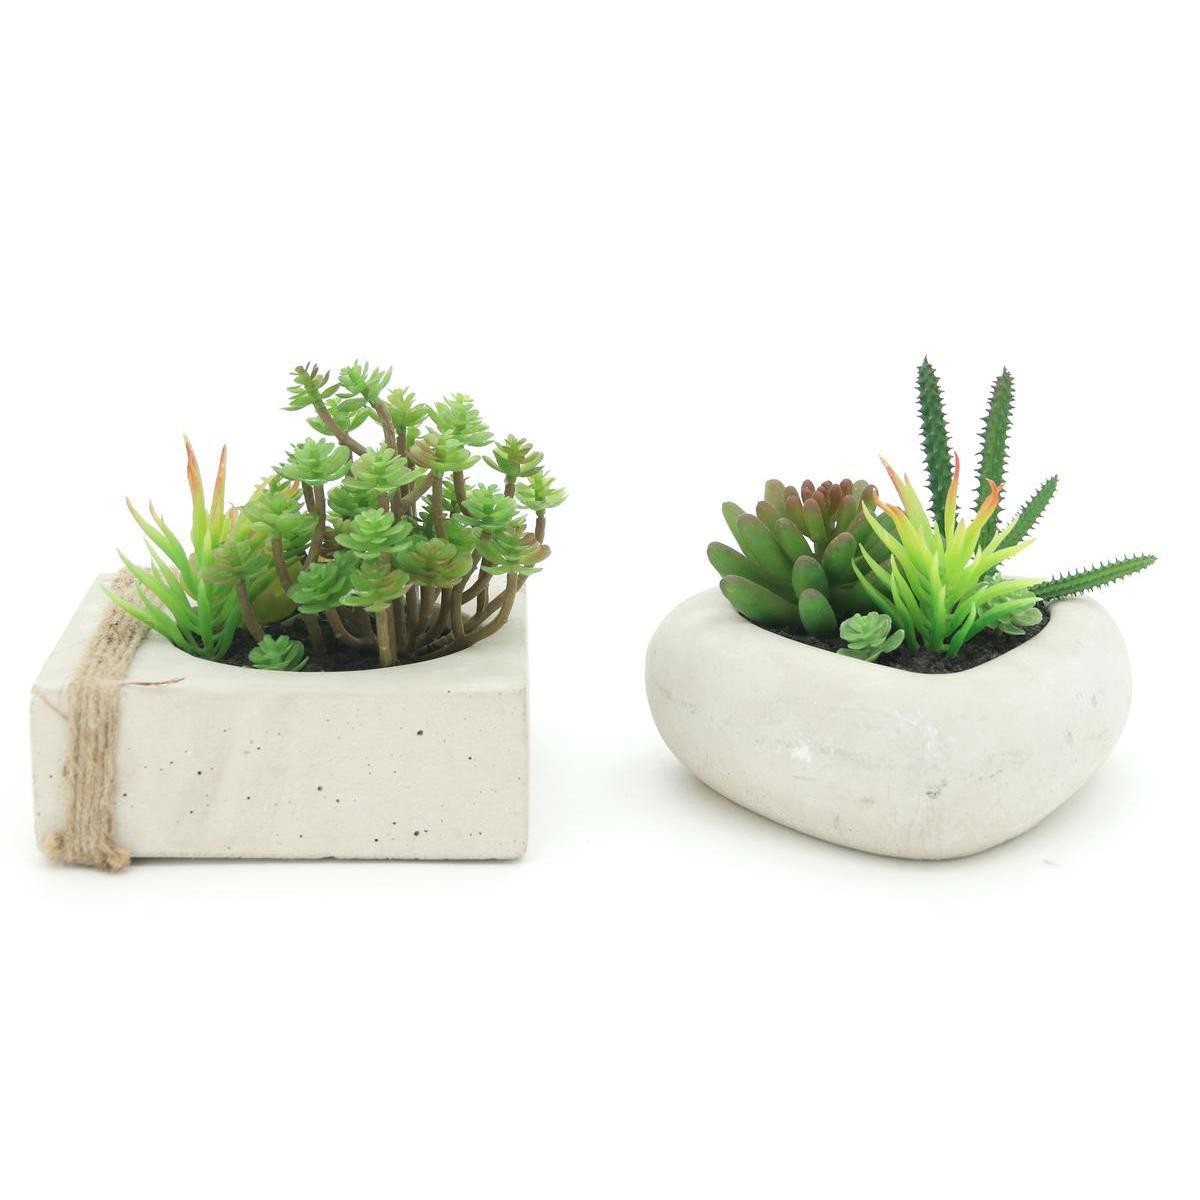 Jardin de succulentes en pot ciment - Différents modèles